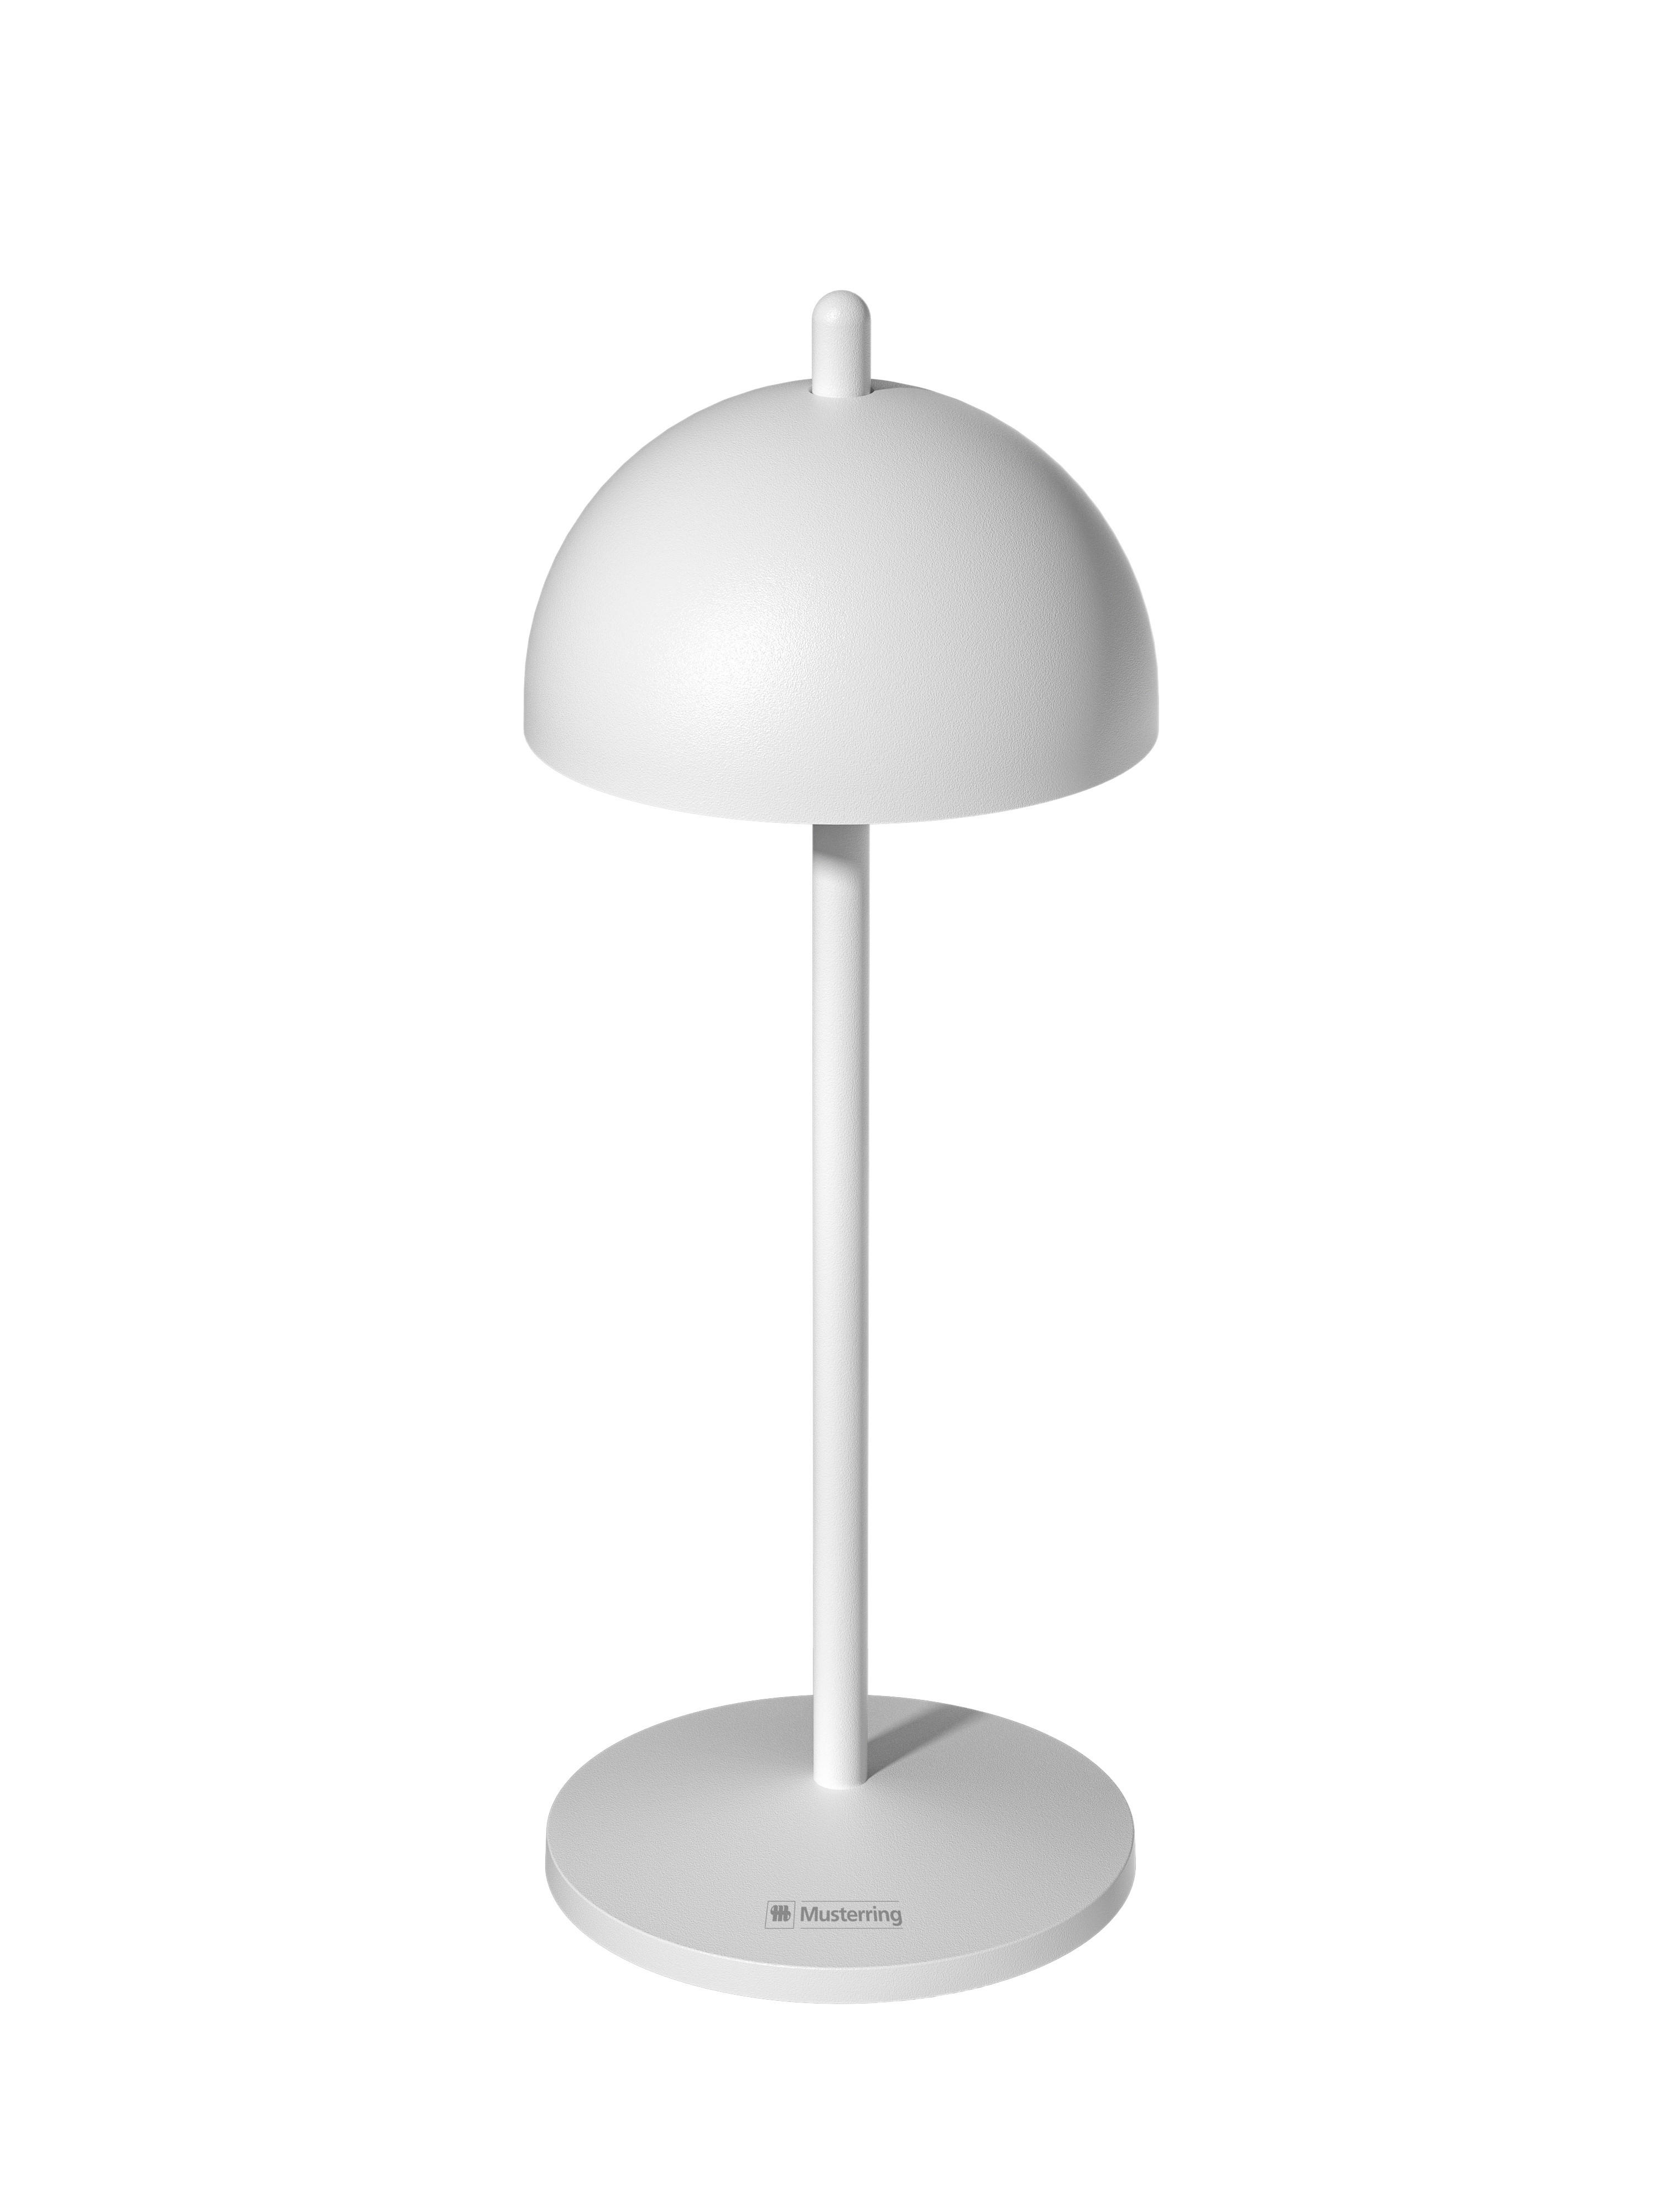 LED AKKU-TISCHLEUCHTE 11/30 cm   - Weiß, Design, Metall (11/30cm) - Musterring